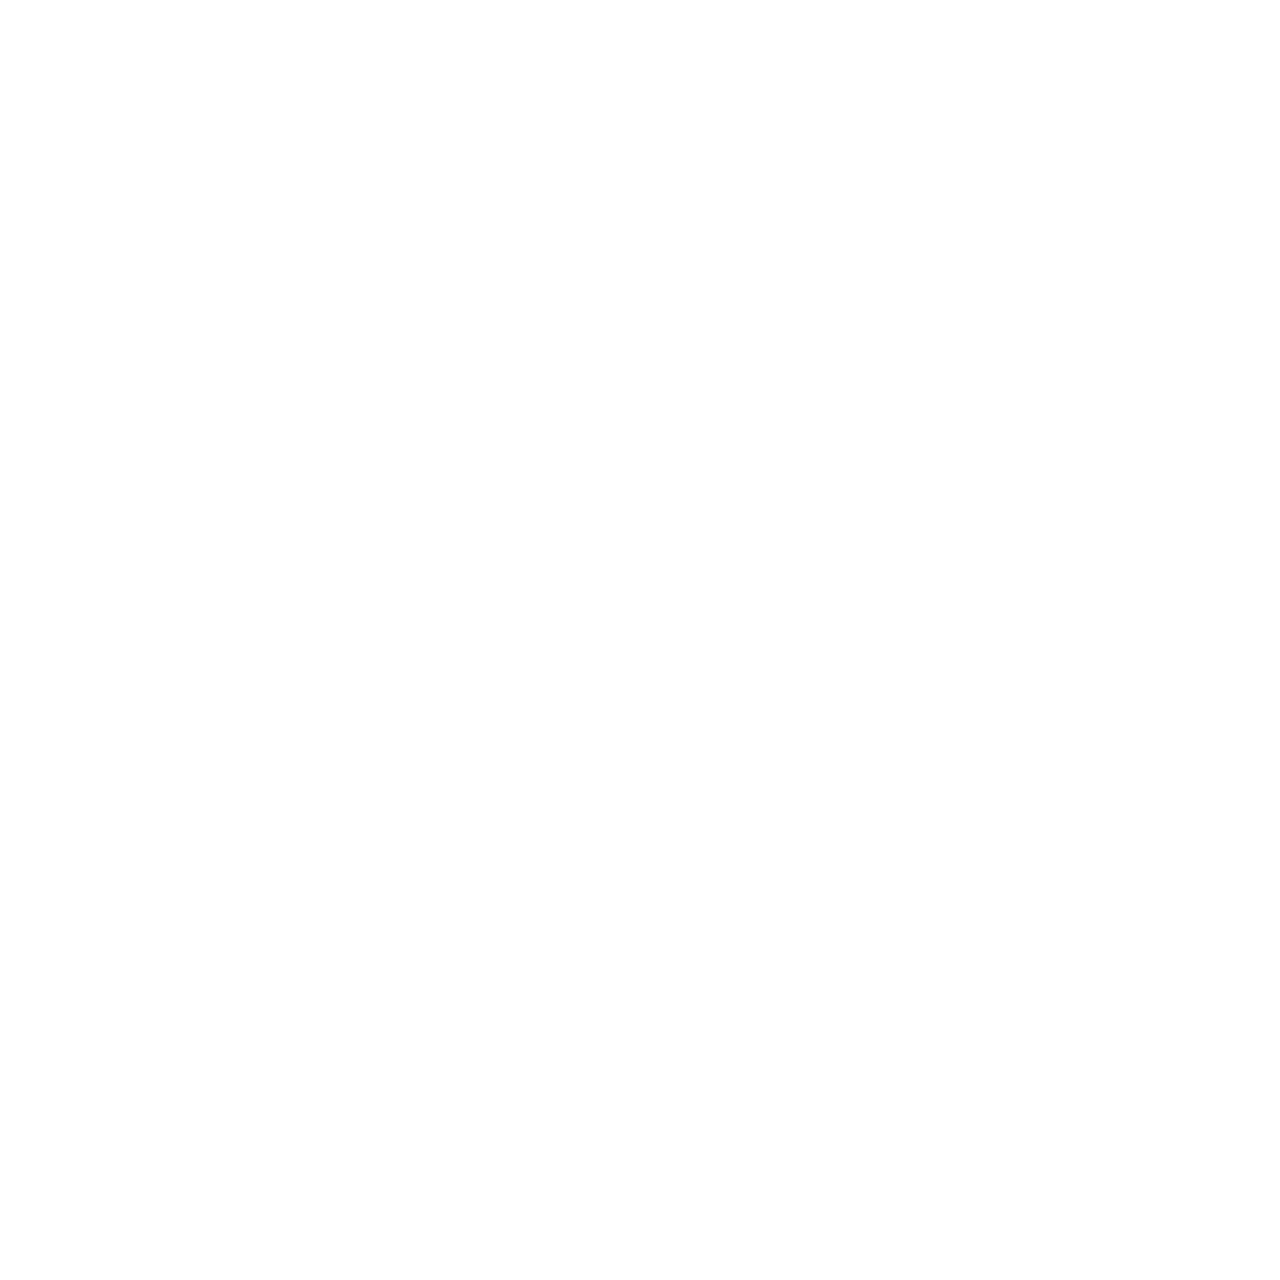 Navgrah Fastners